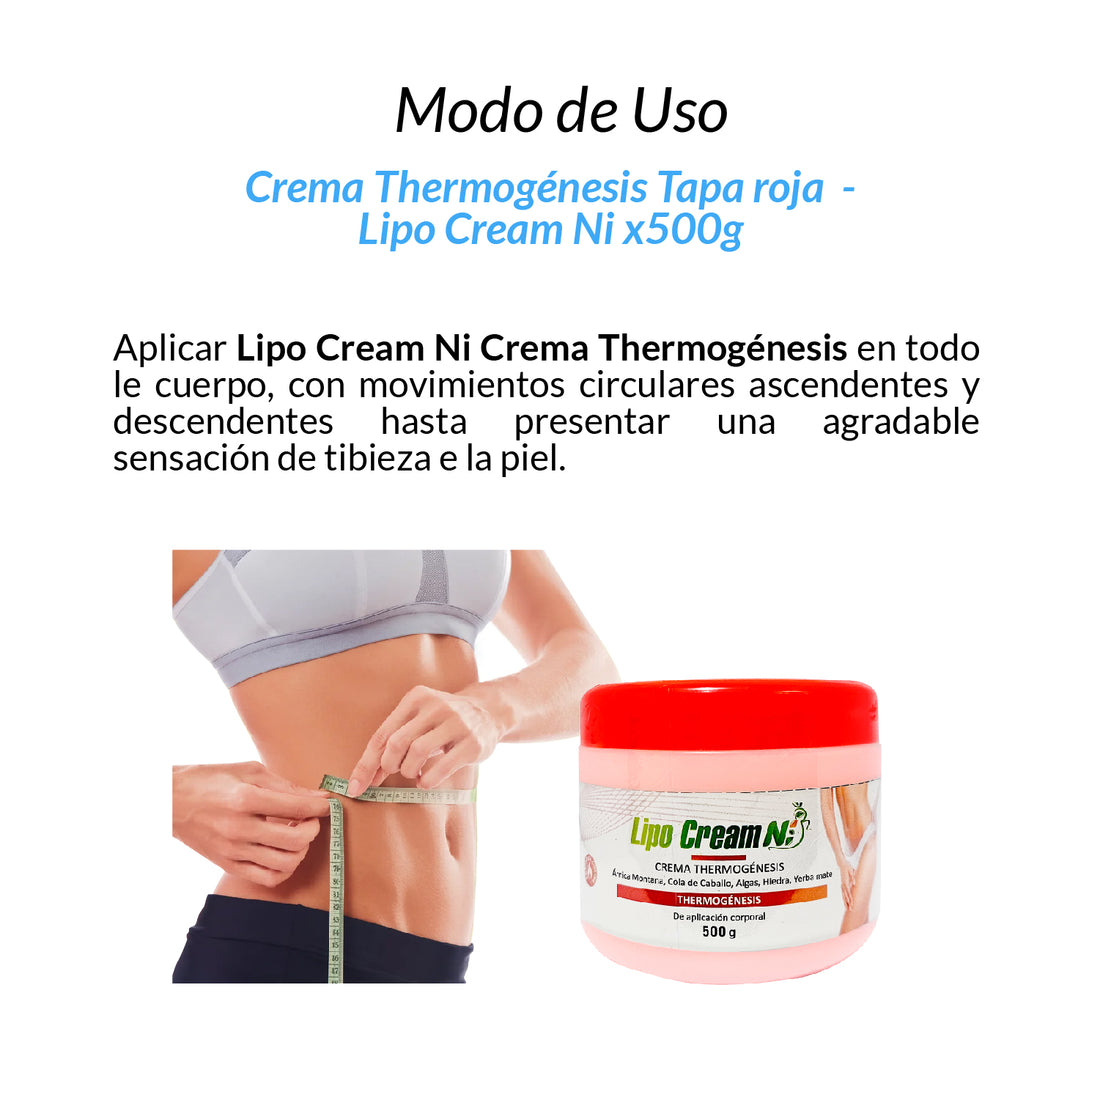 Crema Thermogénesis Tapa roja - Lipo Cream NI 500gr